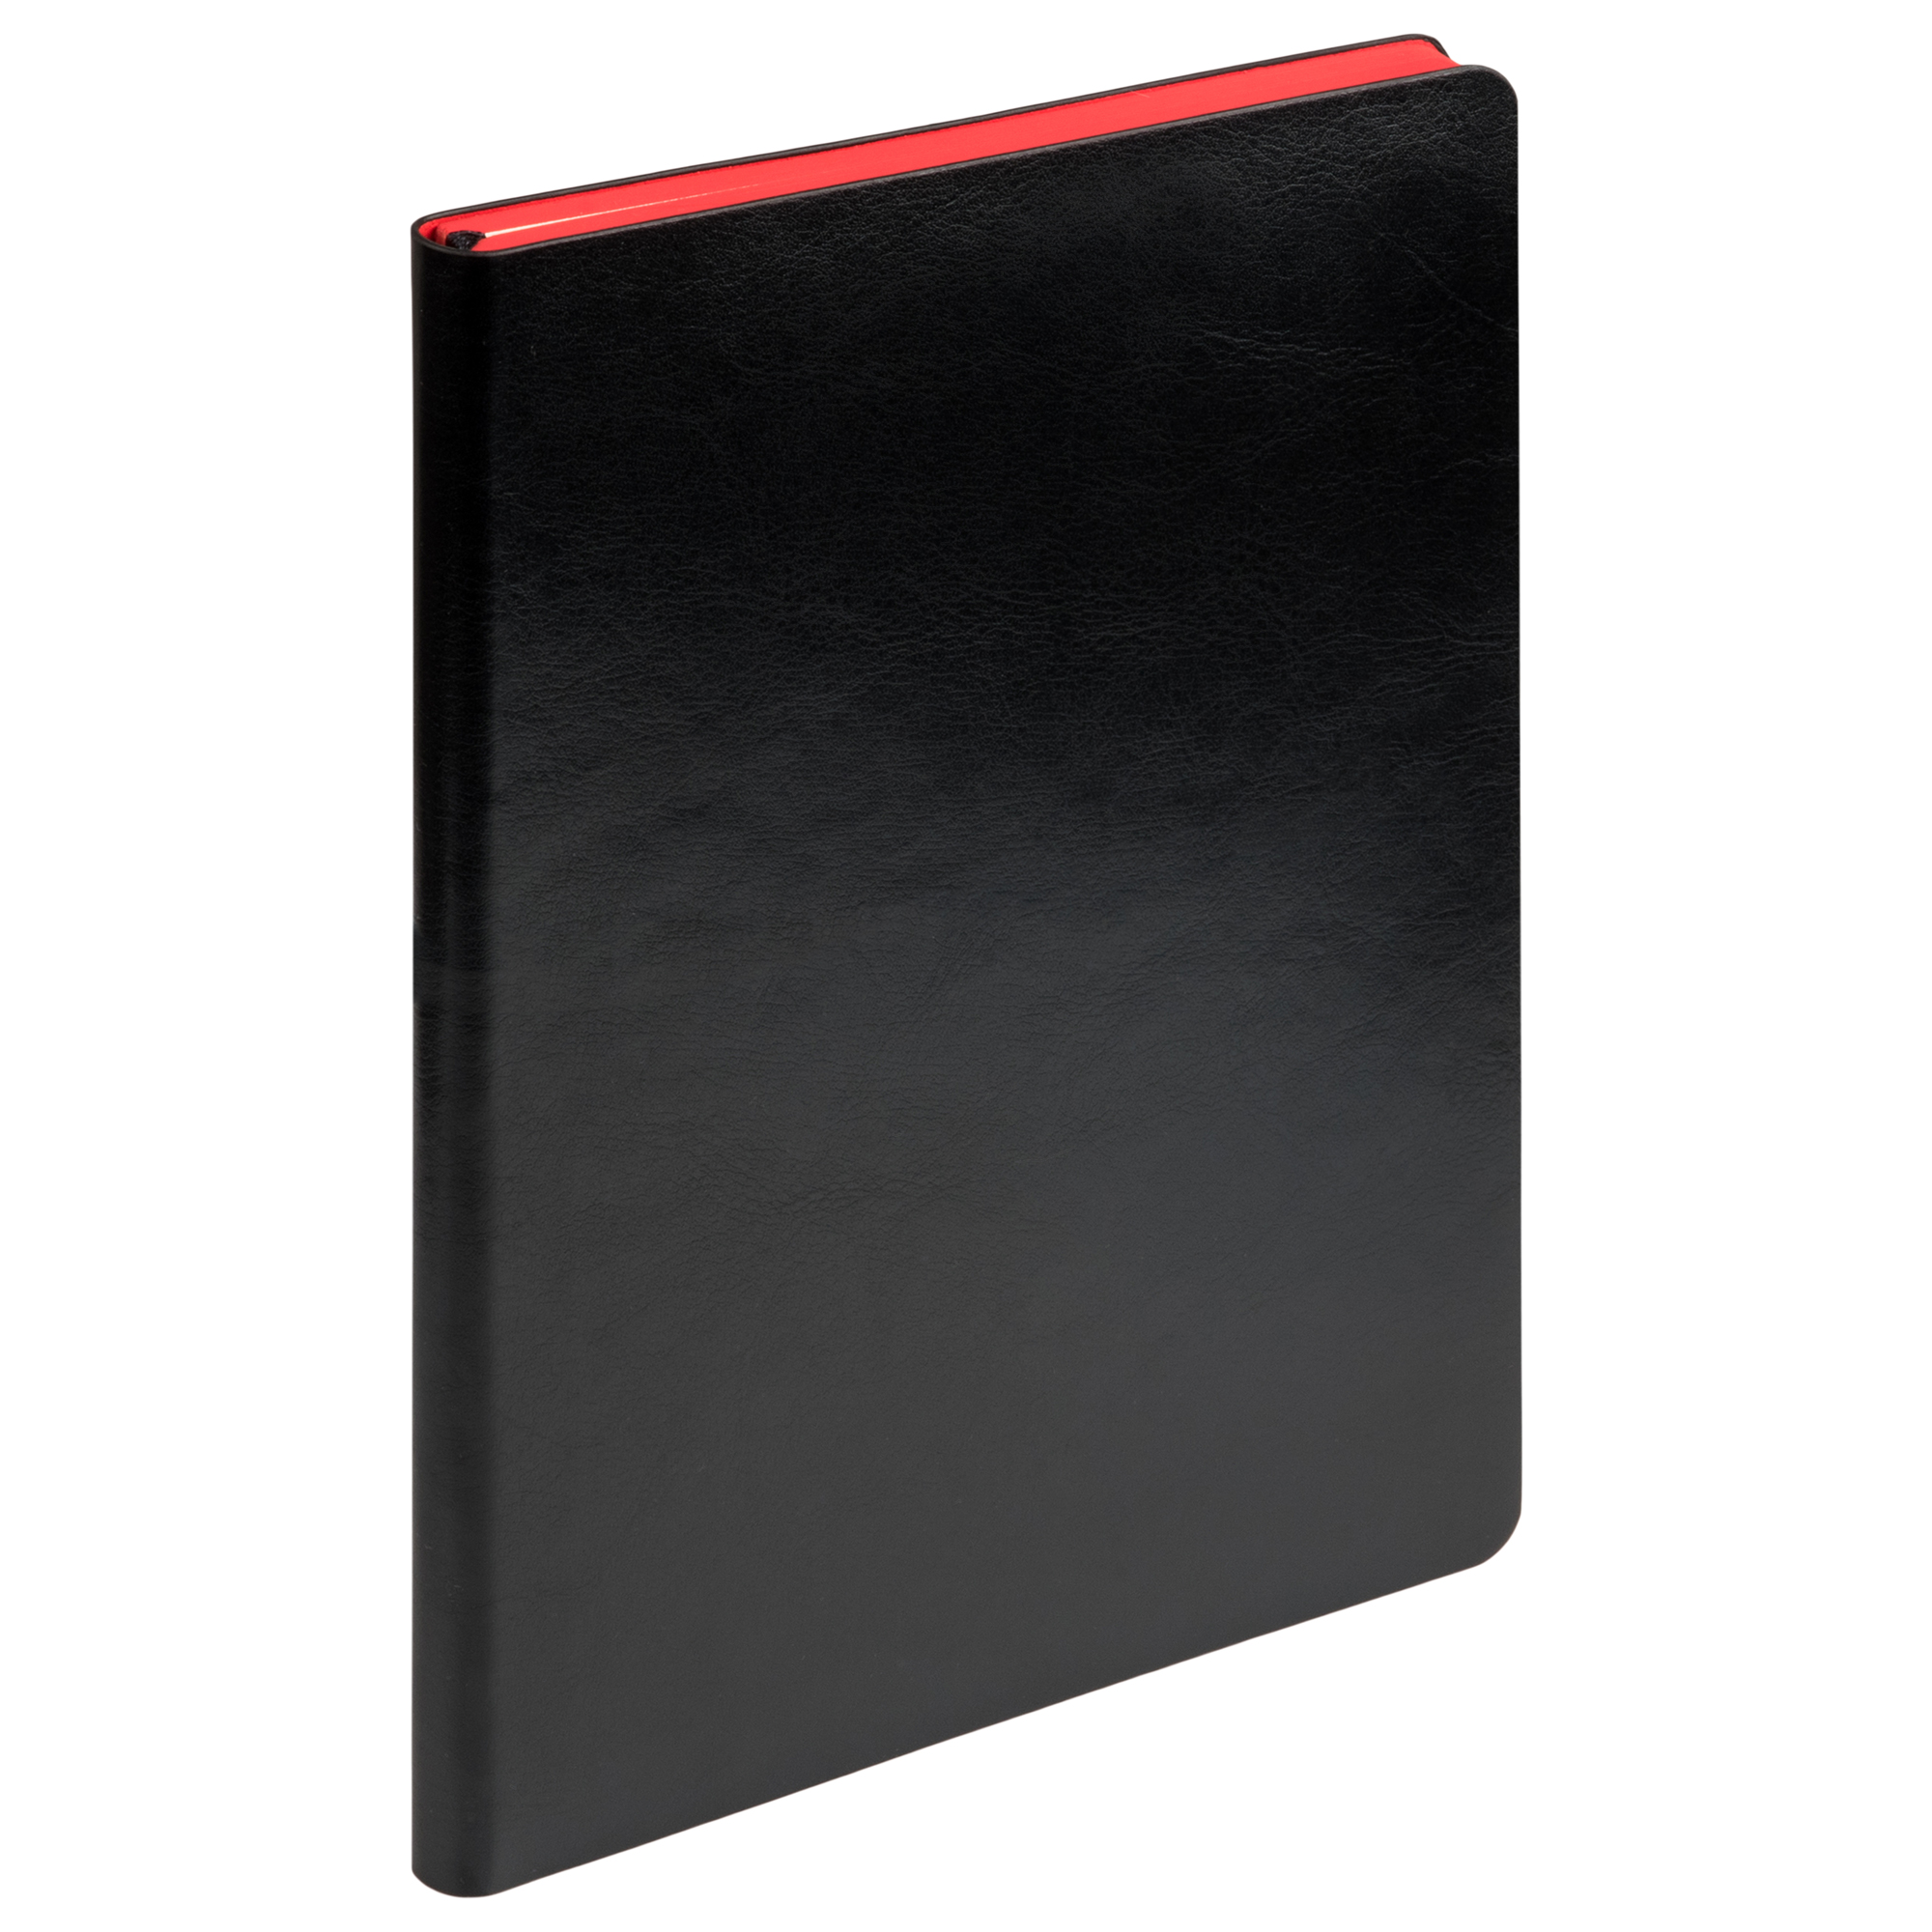 Ежедневник недатированный, Portobello Trend, River side, 145х210, 256 стр, черный/красный, (красный срез)